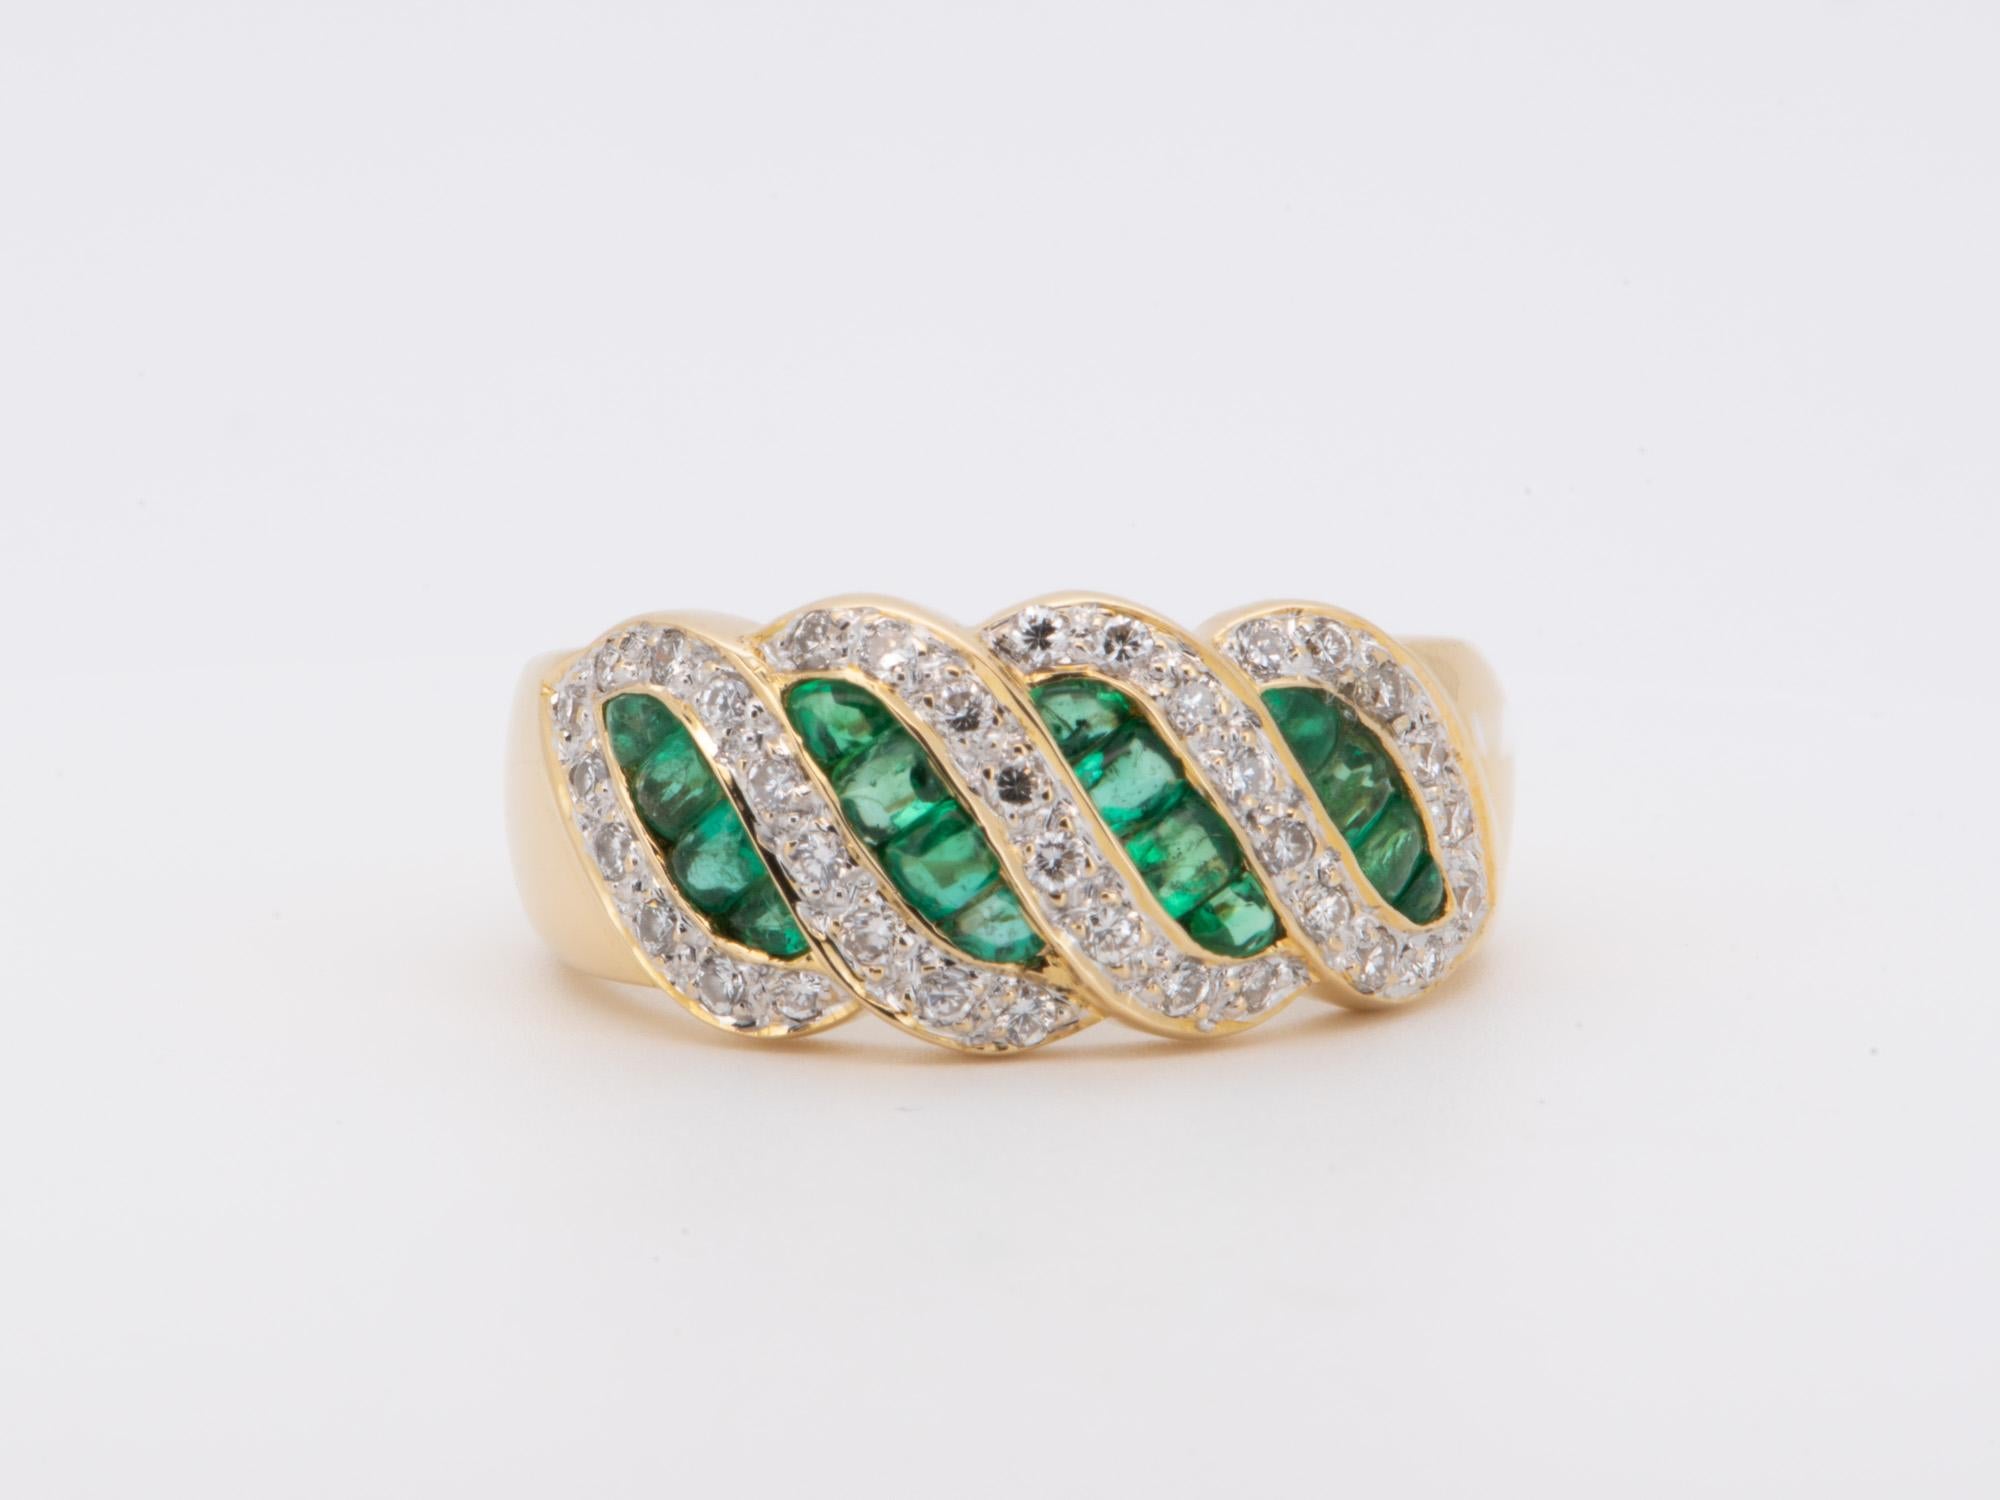 ♥ Dies ist ein einzigartiges Band mit Smaragd-Cabochons in ausgefallener Form (oben glatt, keine Facetten wie die normalen Smaragde, die man in den meisten Schmuckstücken sieht), die in Kanäle gefasst sind, und mit Diamanten, die sich in einem